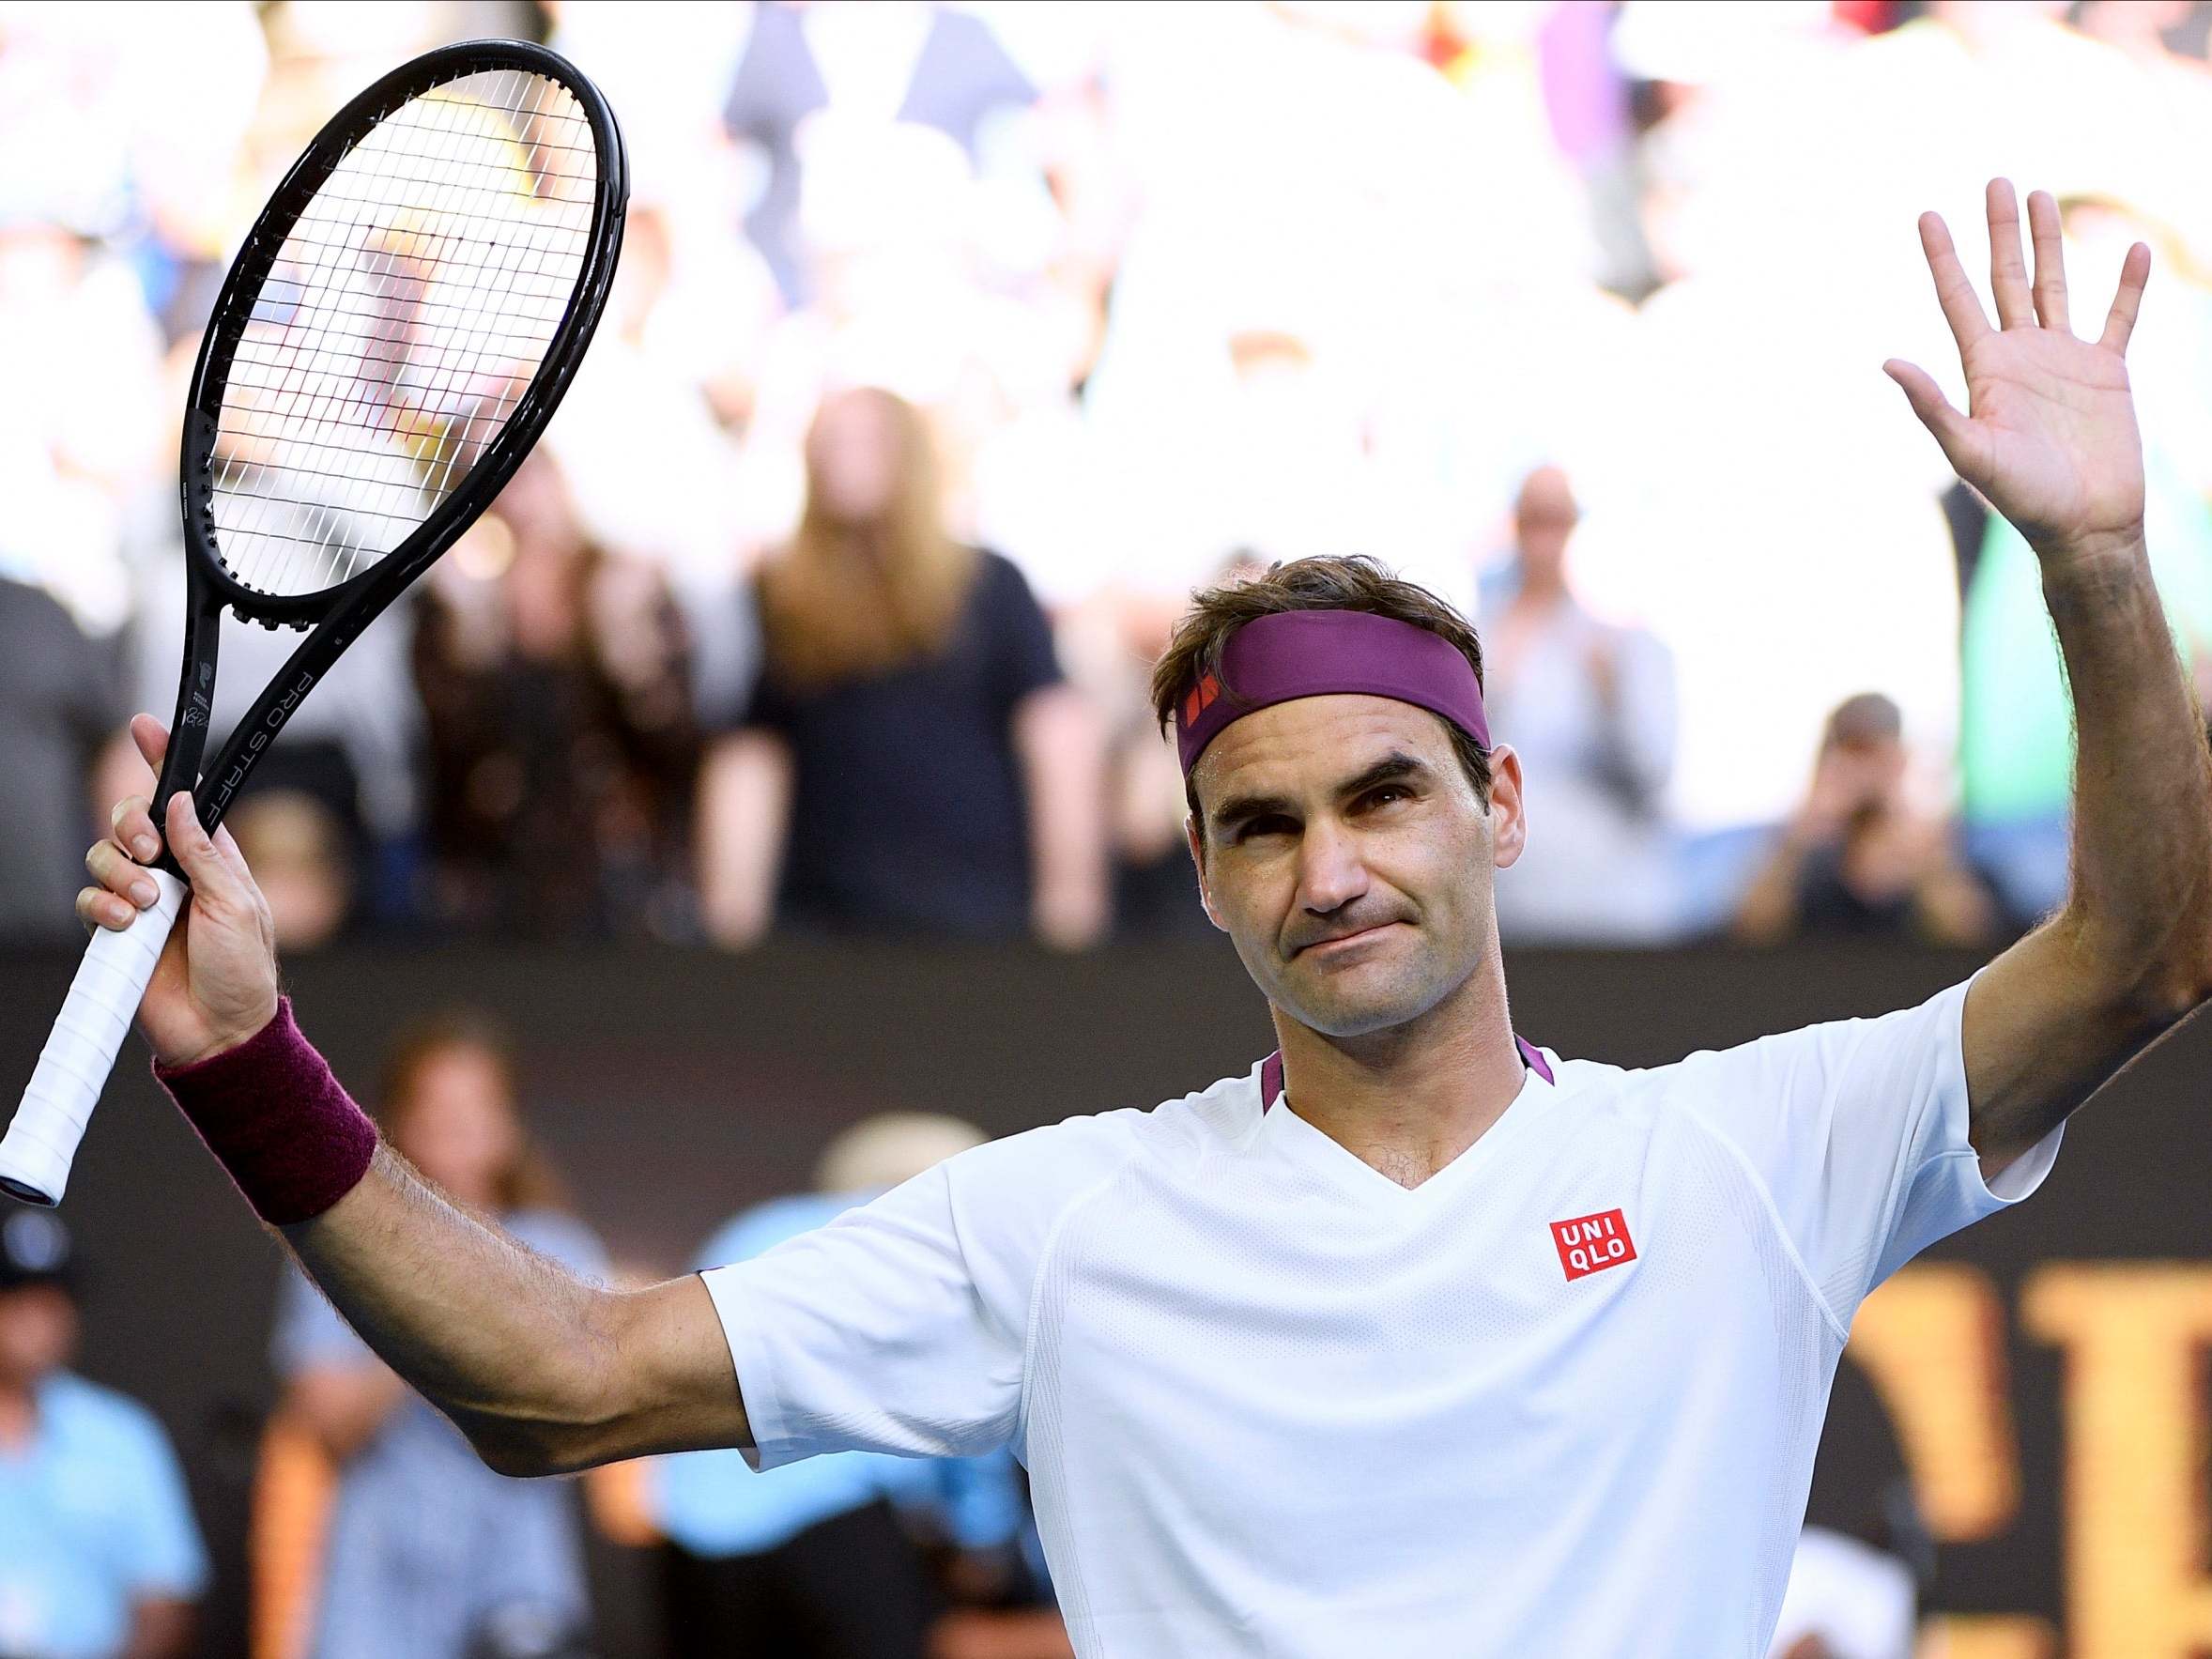 Australian Open 2020 results: Roger Federer wins | The ...